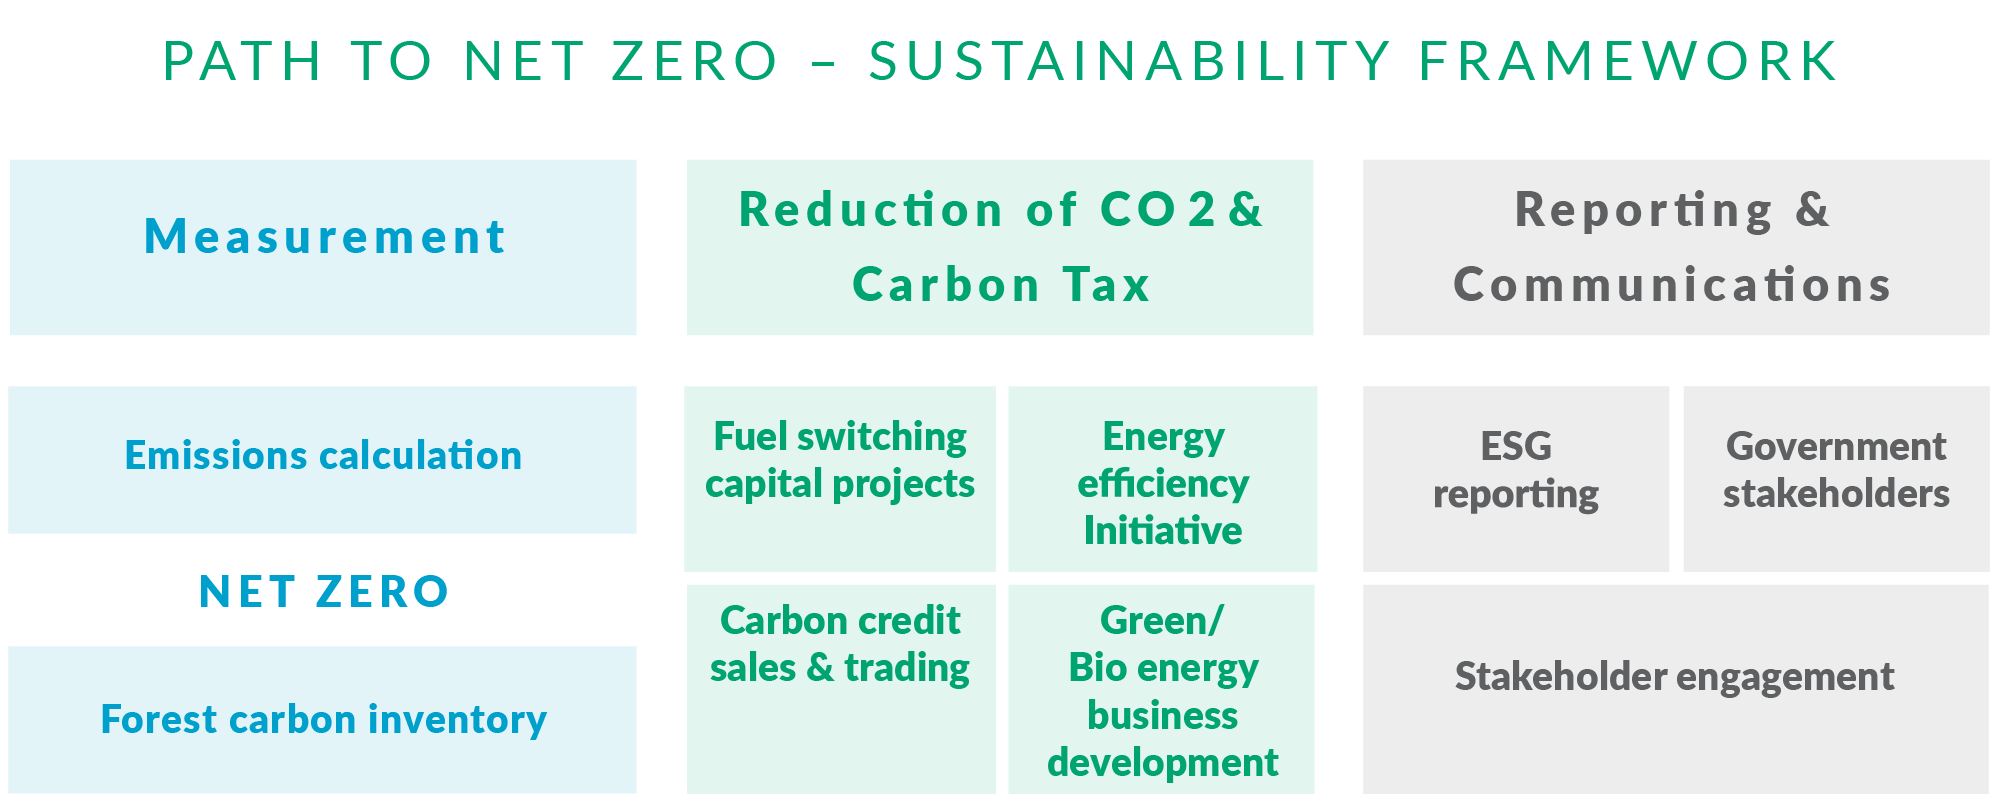 Infographic: Net Zero framework table